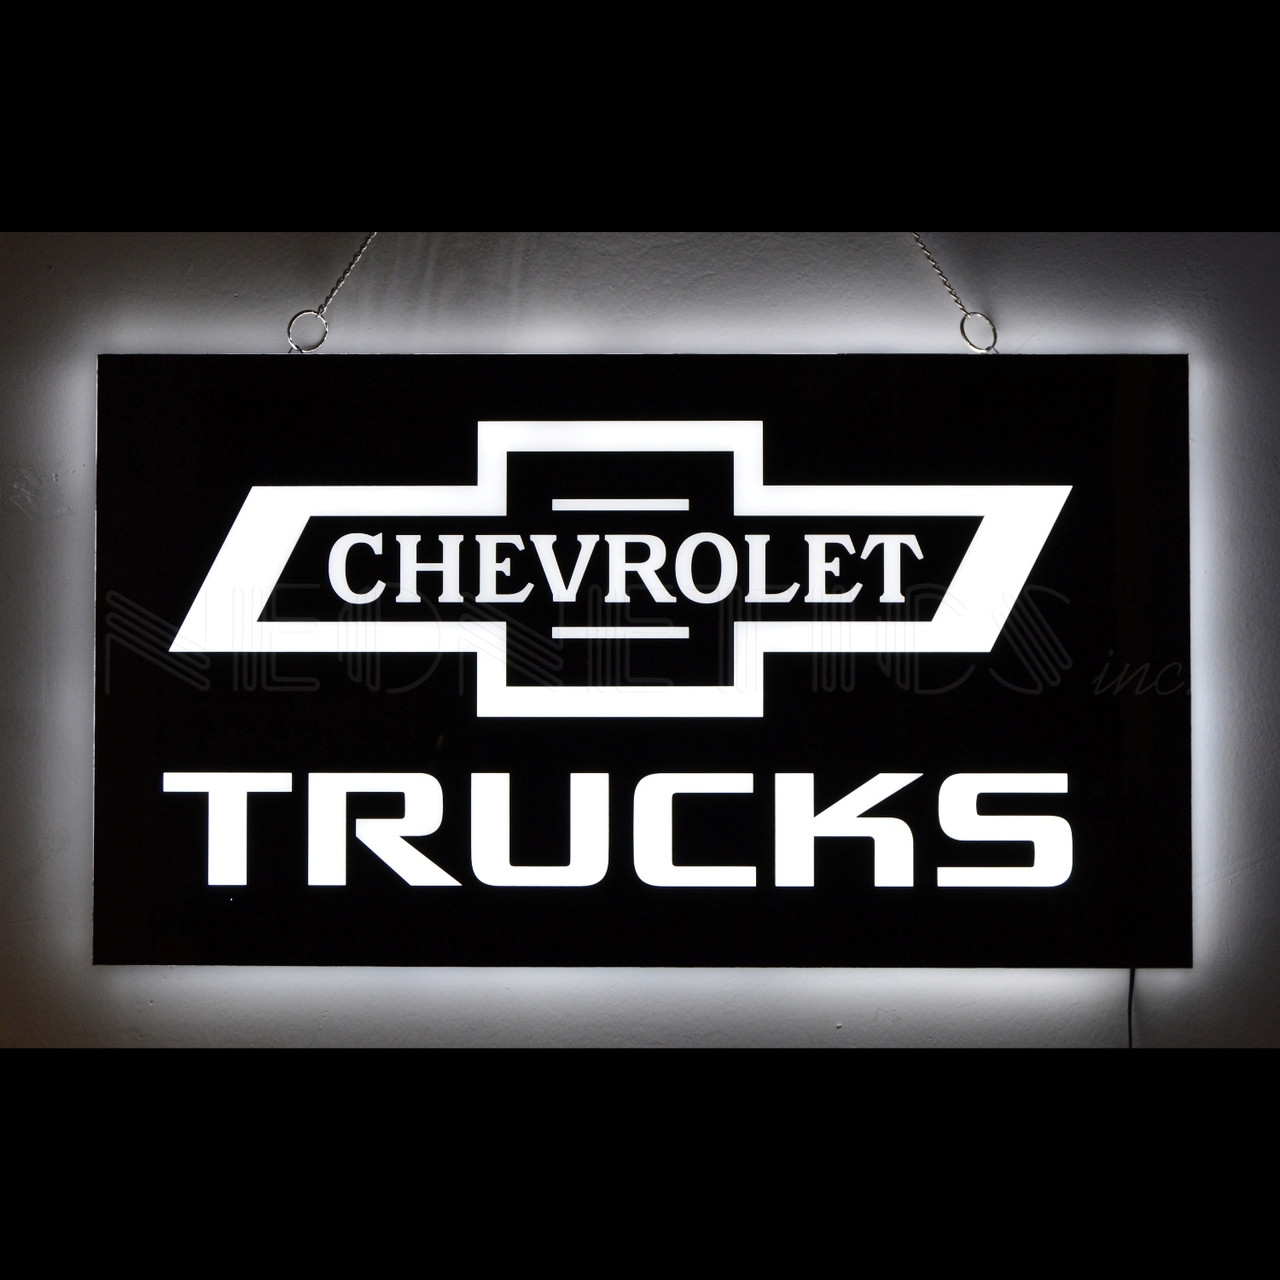 Chevrolet Trucks Slim LED Sign (lit)